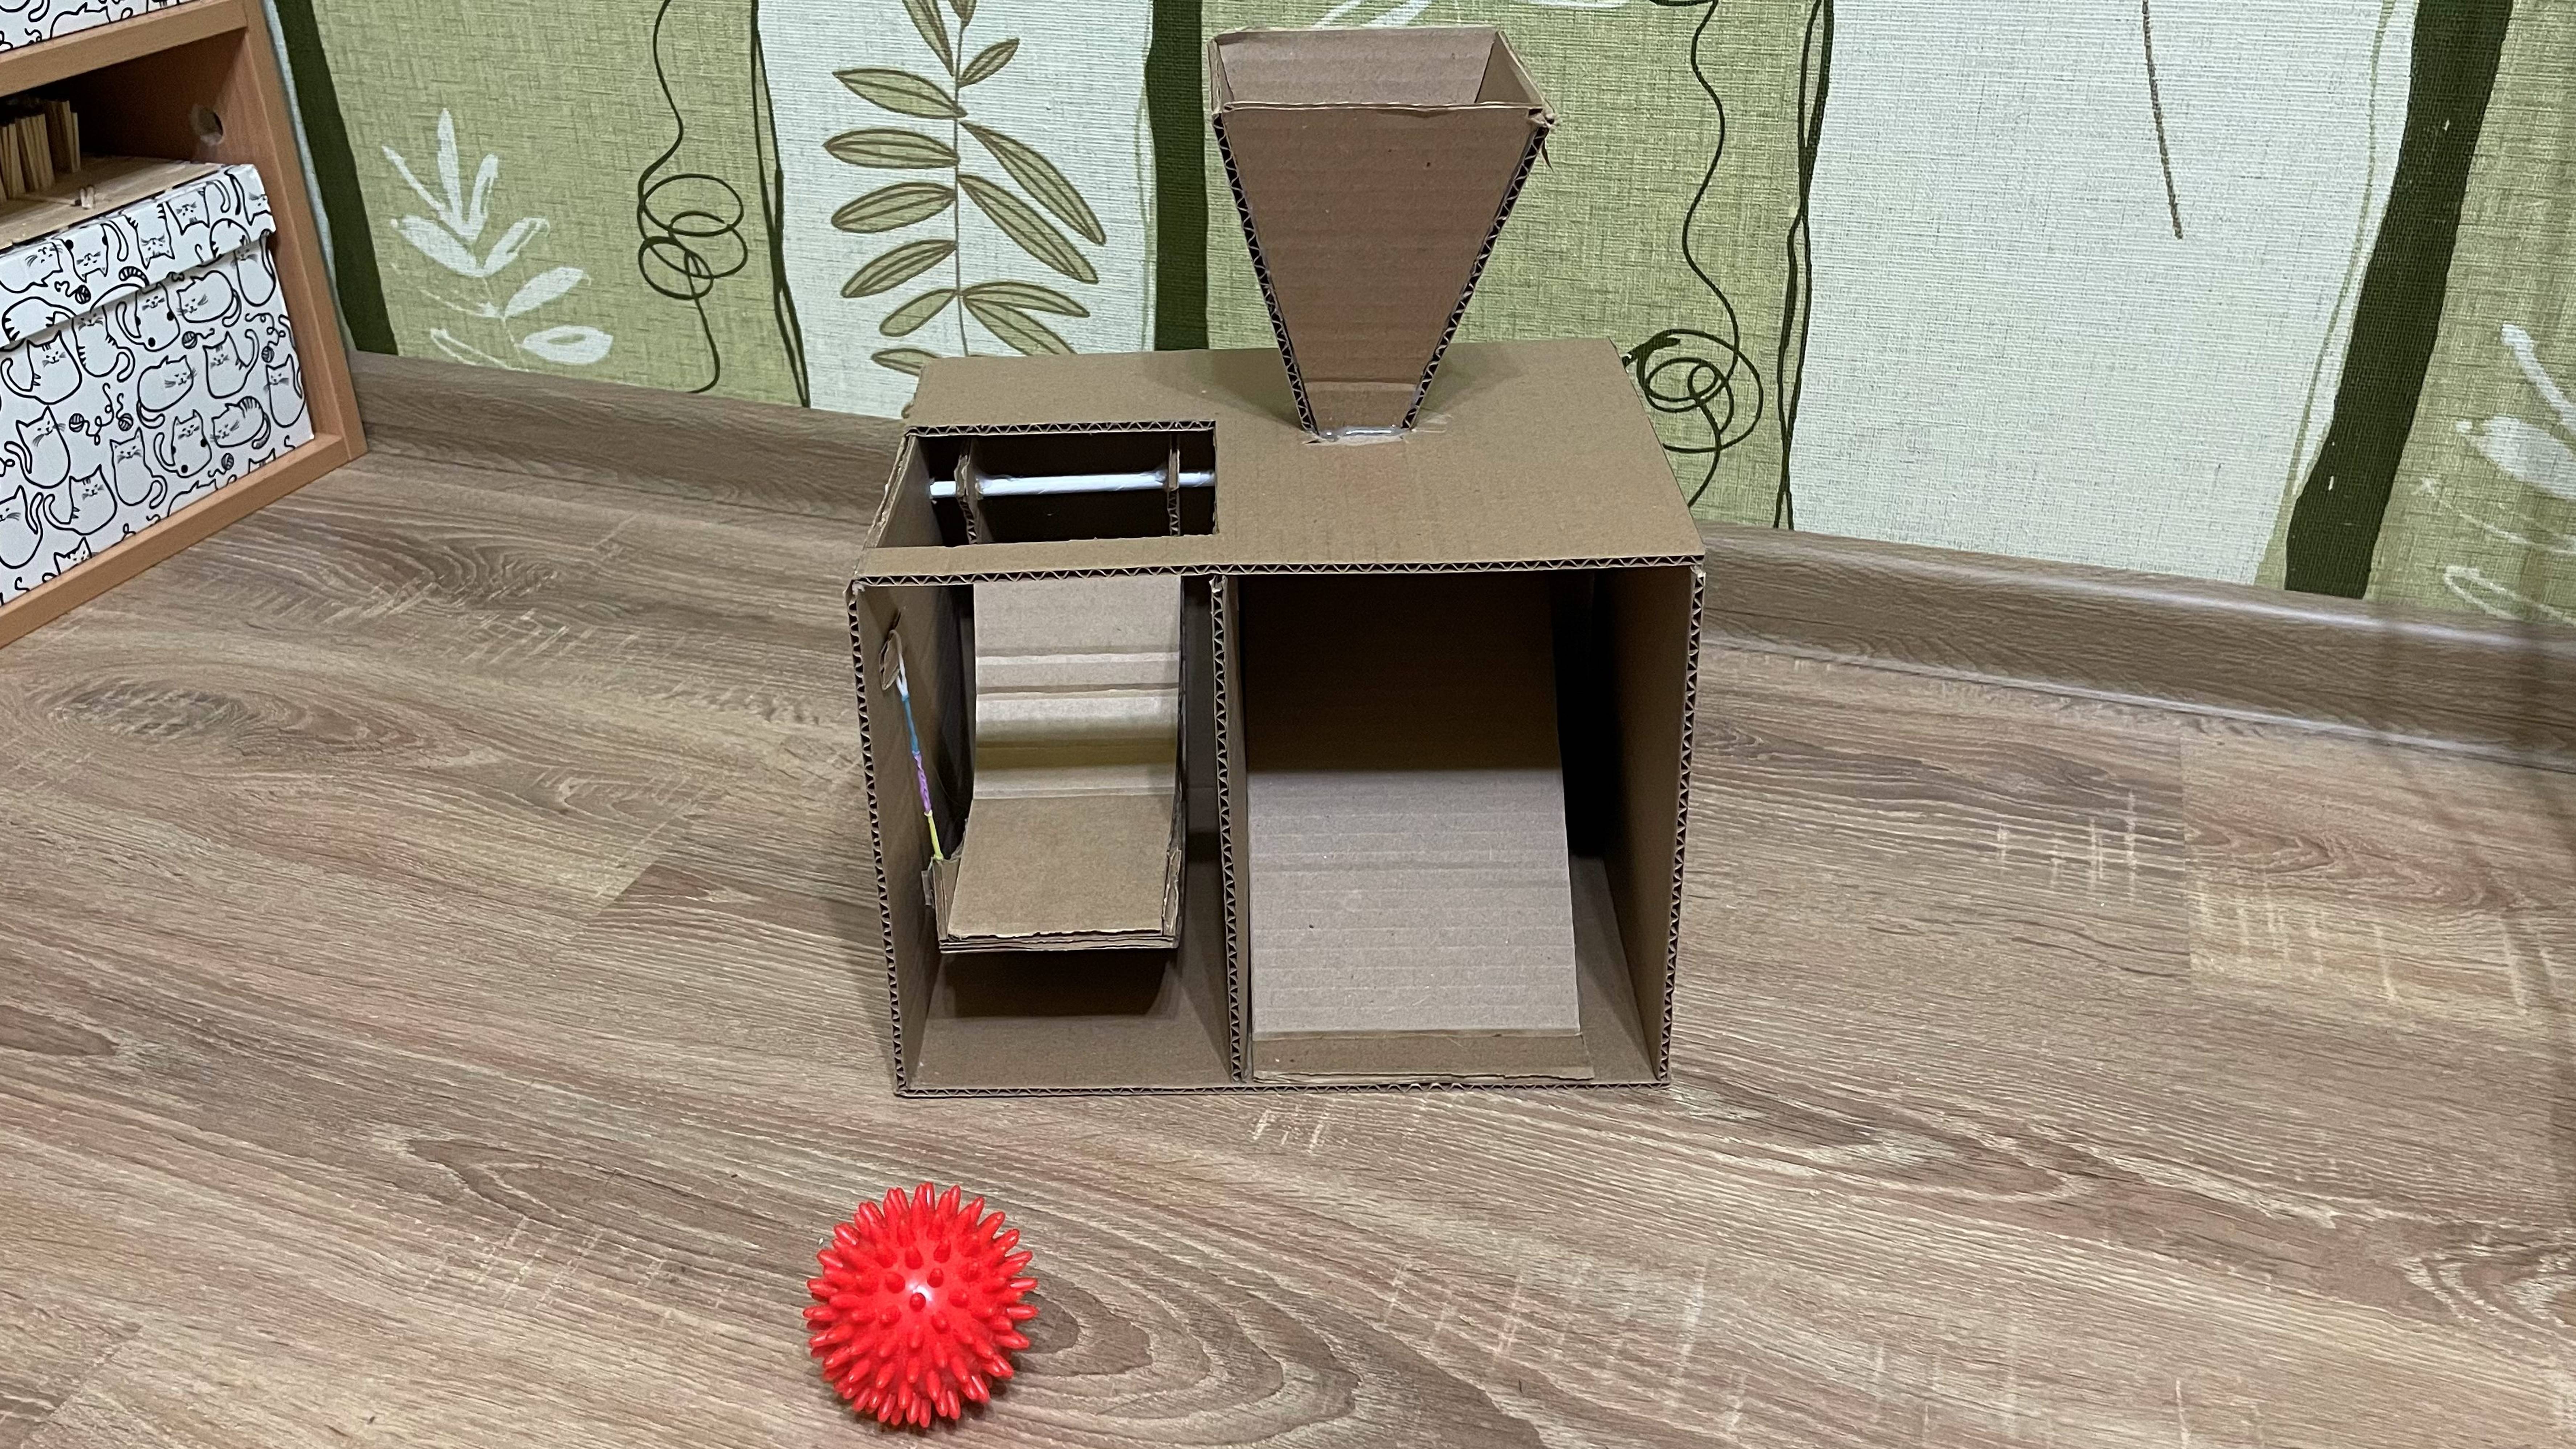 Интерактивная игрушка кормушка для собак своими руками